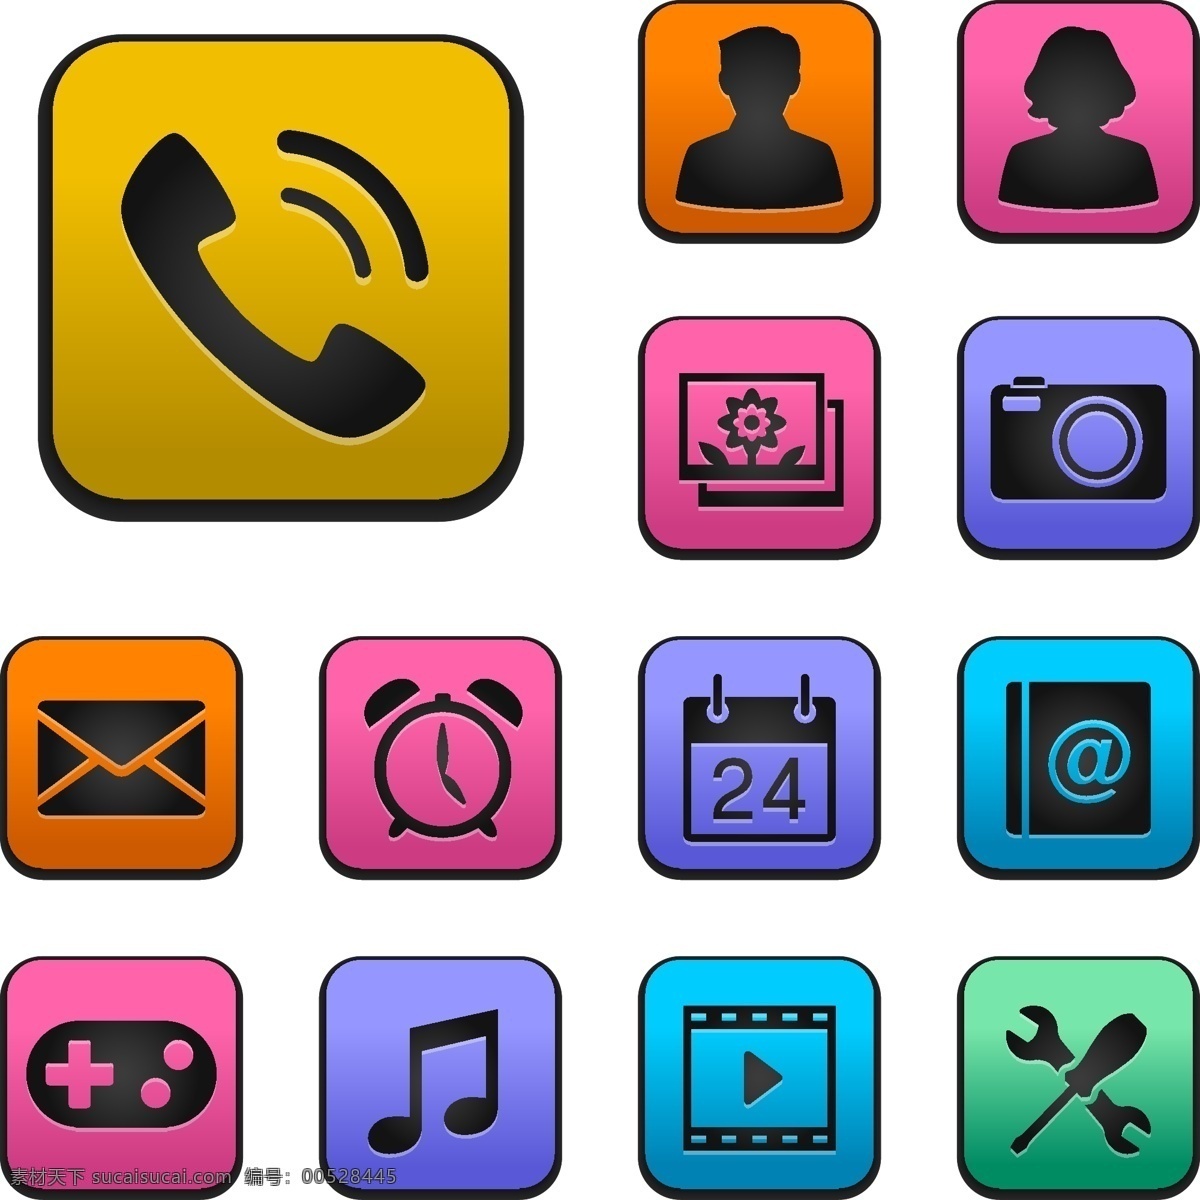 七彩 手机 标志 矢量 ai格式 电话 闹钟 人物 矢量素材 手机常用标志 有手机 app app图标